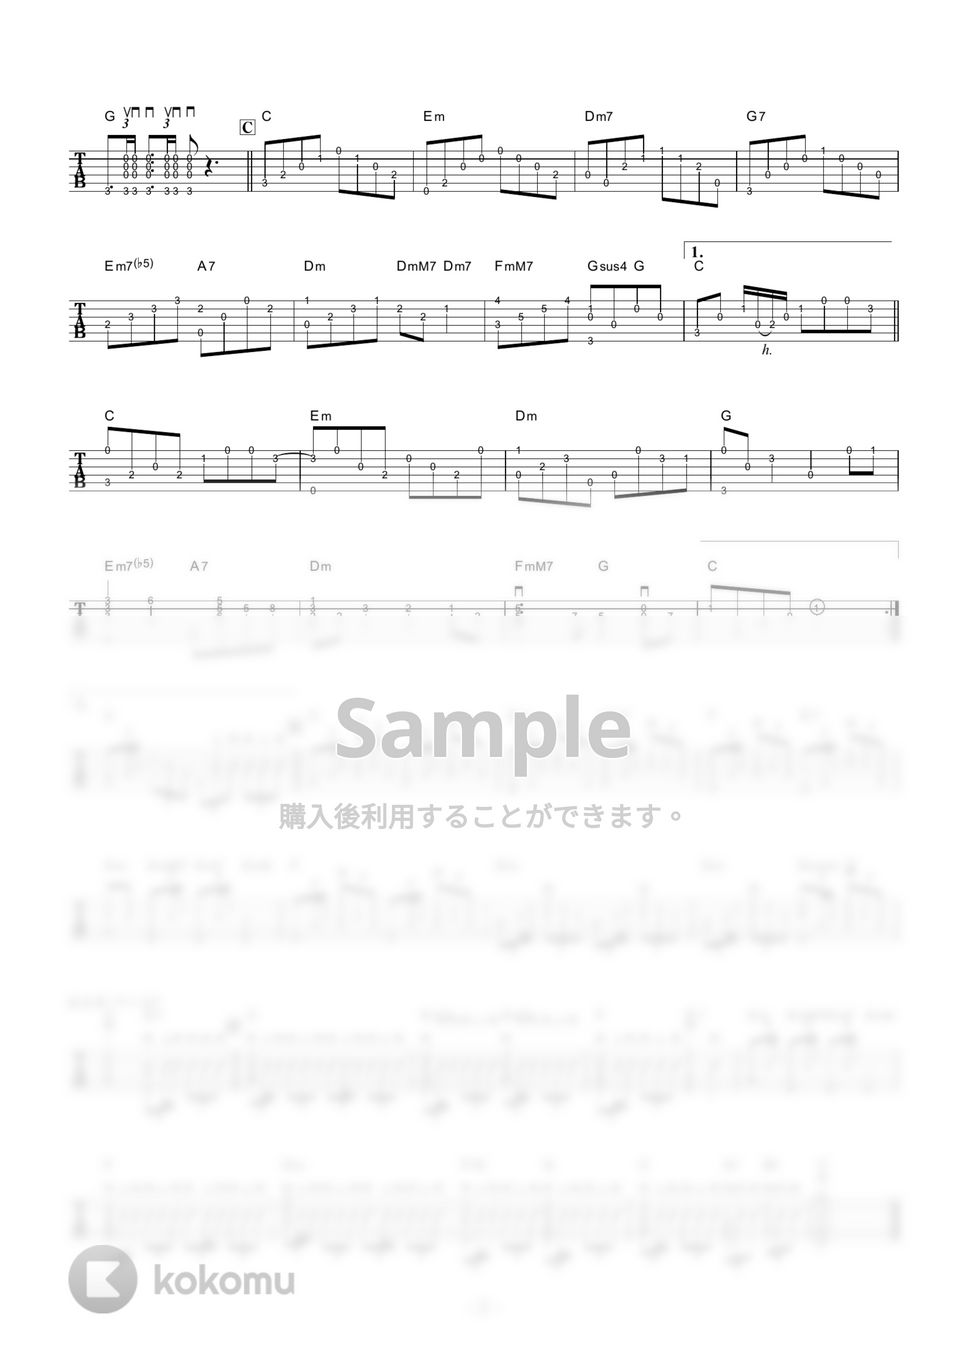 小坂明子 - あなた (ギター伴奏/イントロ・間奏ソロギター) by 伴奏屋TAB譜